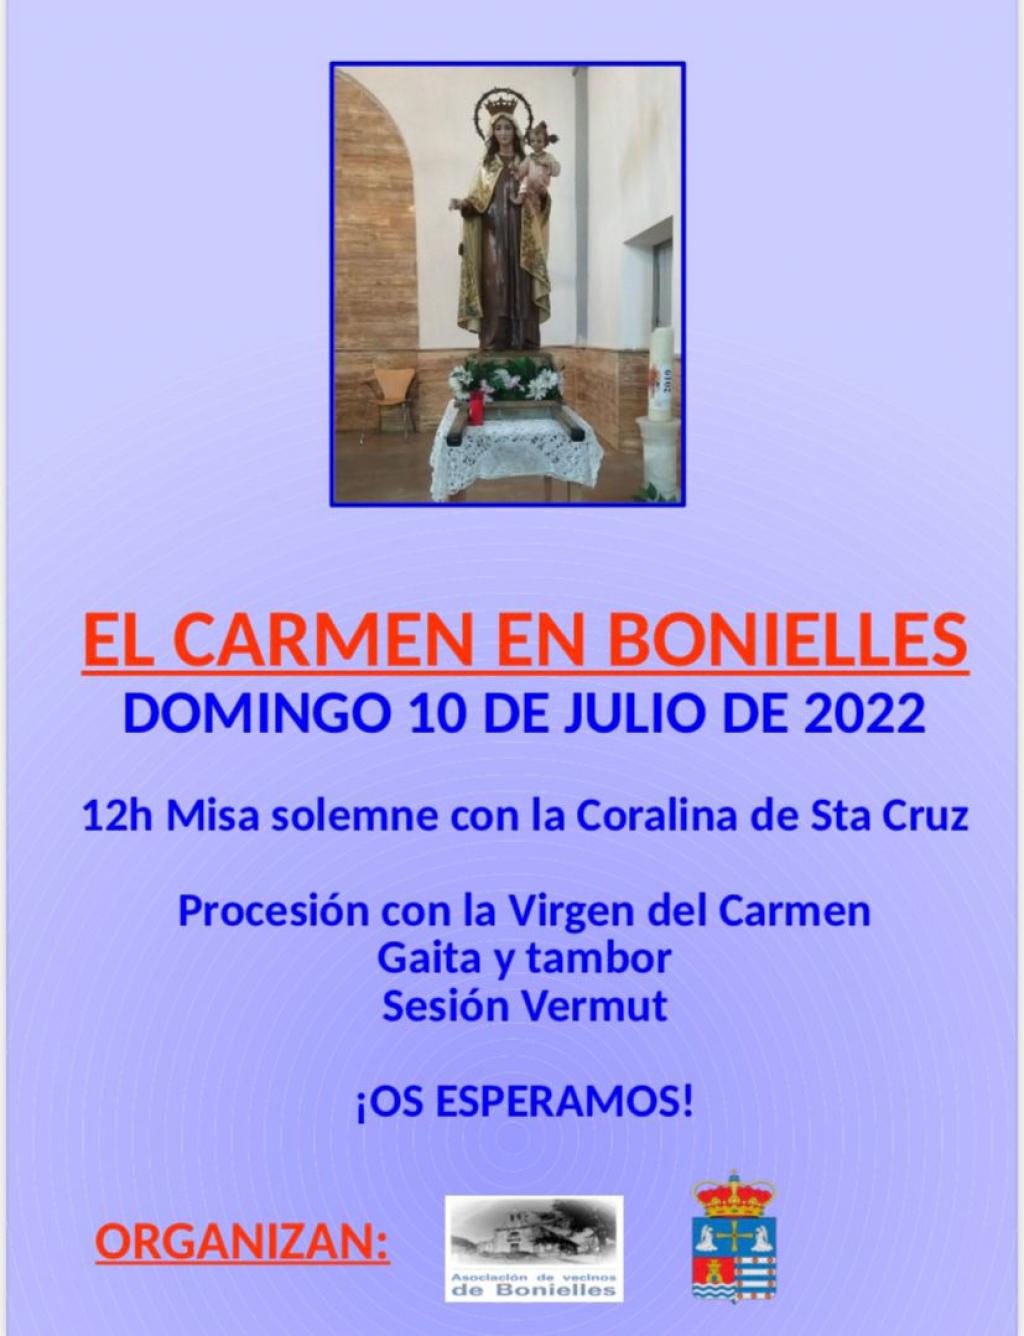 El Tapin - Bonielles celebrará El Carmen el domingo 10 de julio